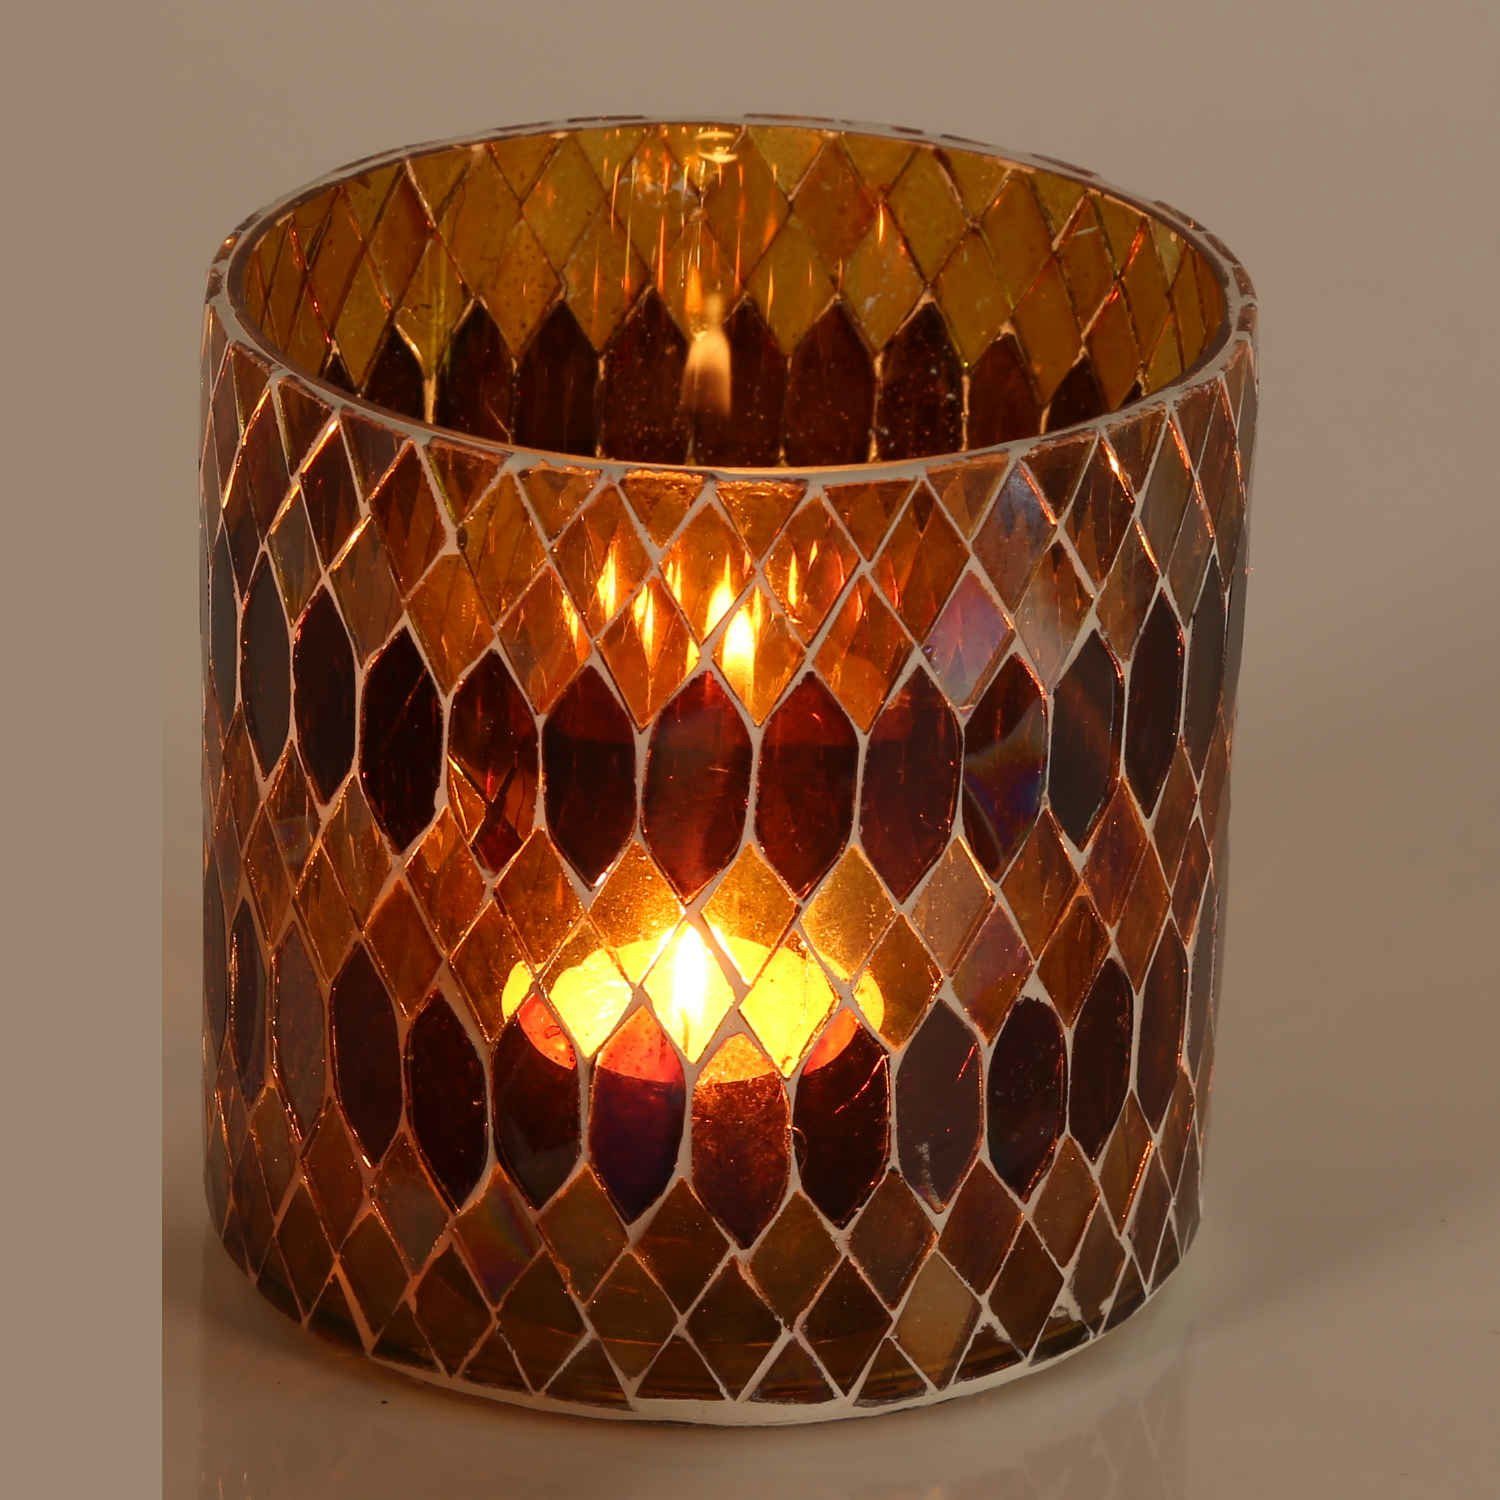 Casa Moro Windlicht Marokkanisches Mosaik-Windlicht Rayan GELB rund aus Glas (Teelichthalter Boho Chic Kerzenständer Kerzenhalter, Glaswindlicht in den Größen S und M oder als 2er Set bestellbar), Ramadan Kerzenleuchter Tisch Dekoration